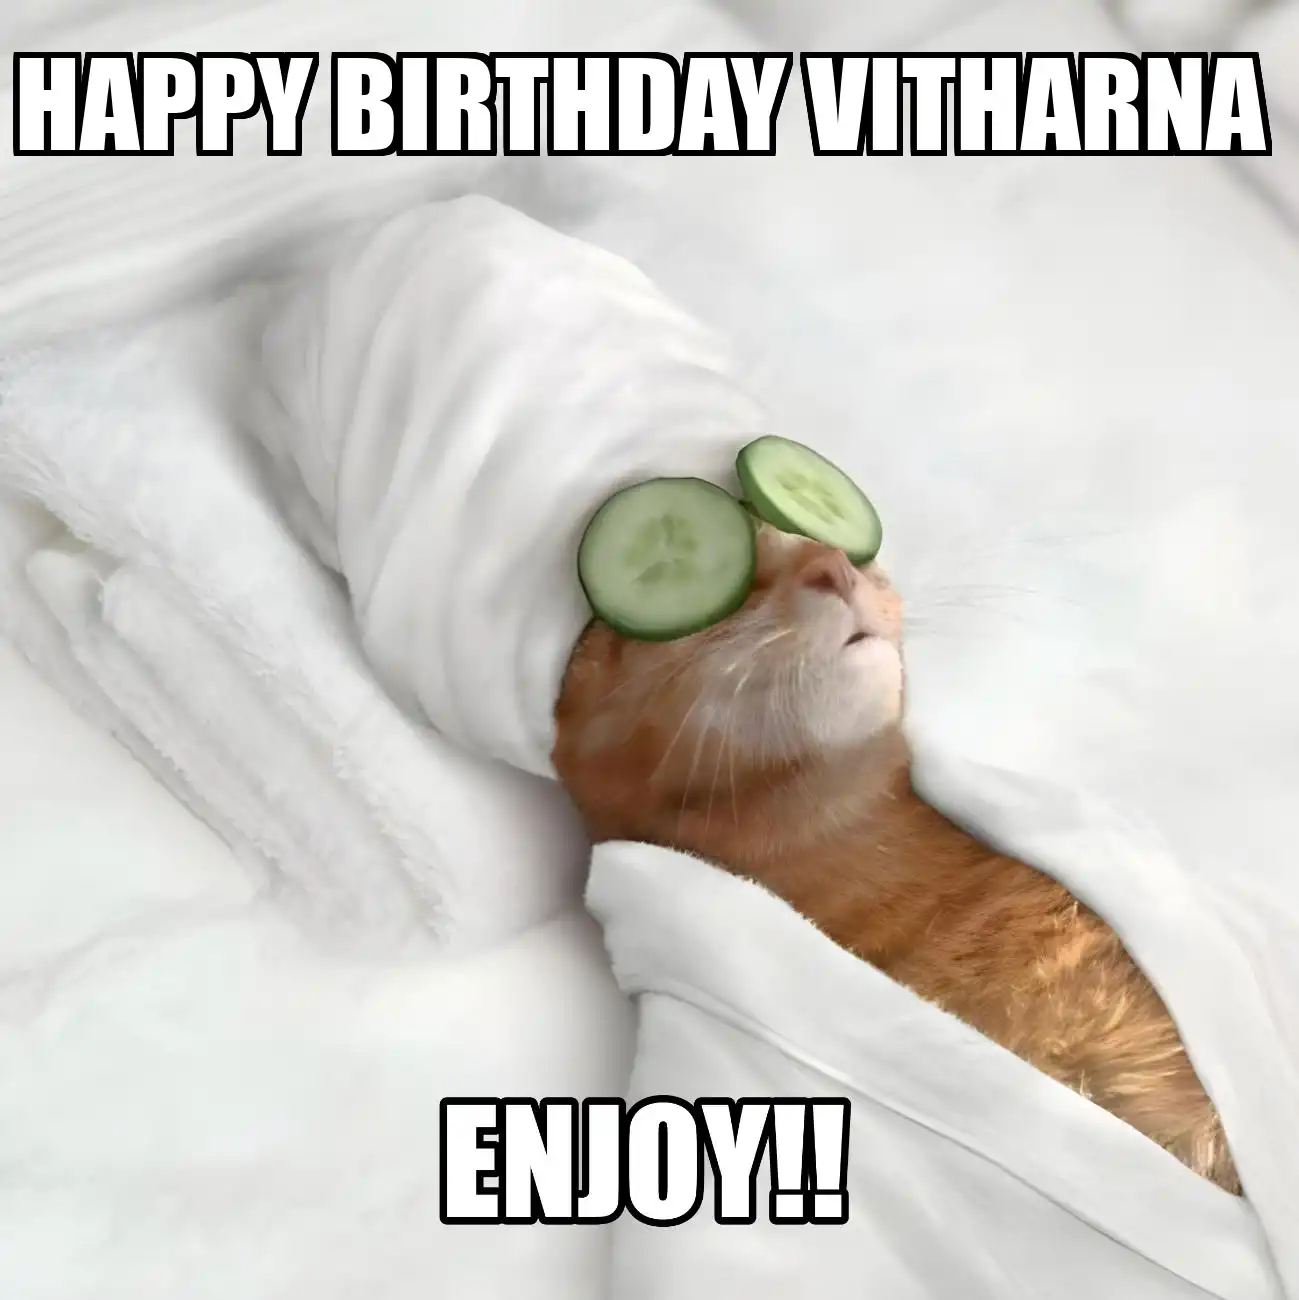 Happy Birthday Vitharna Enjoy Cat Meme